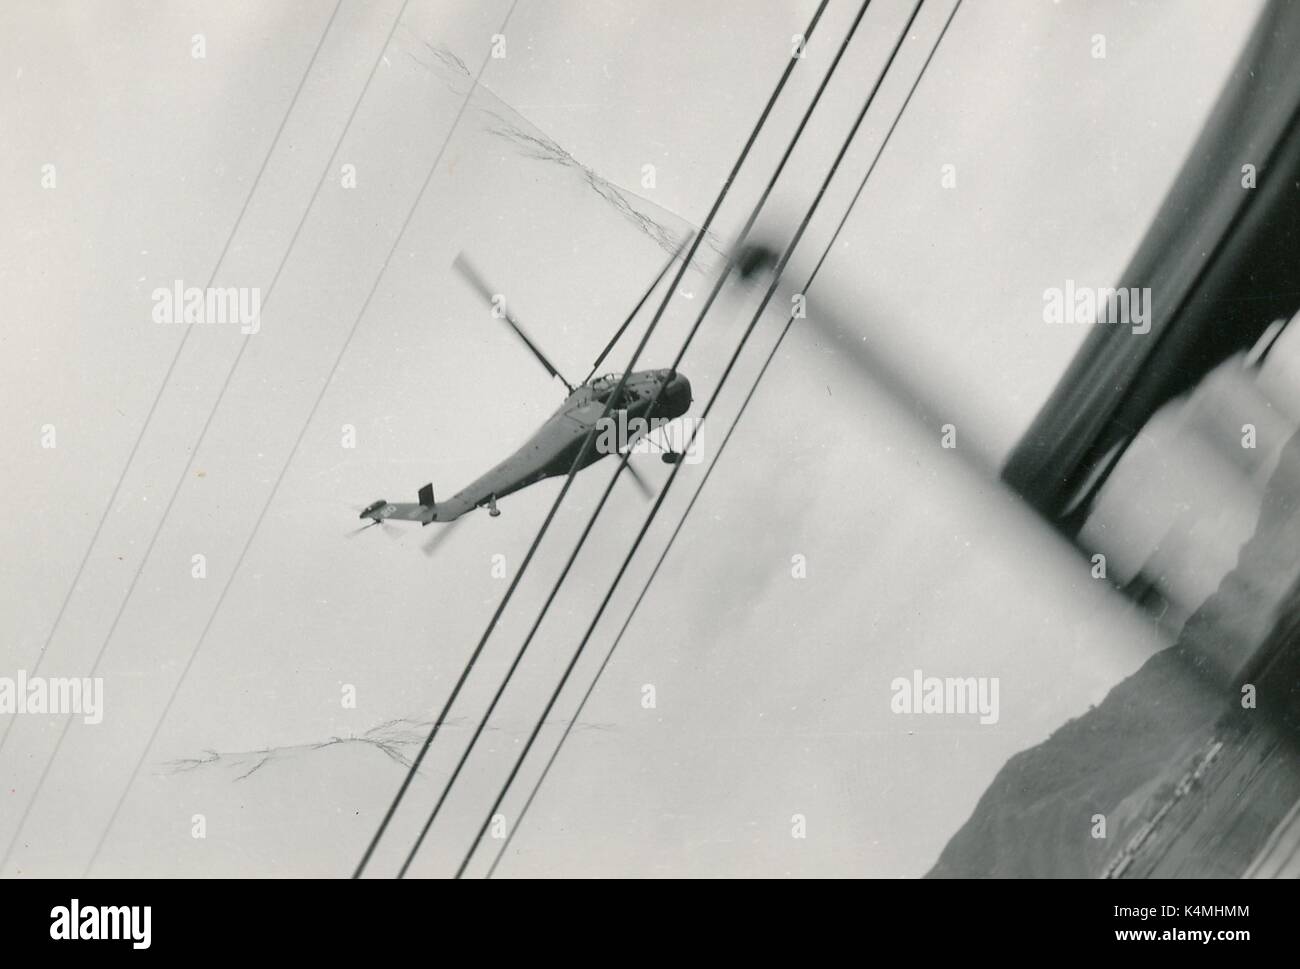 Ein United States Marine Corps Hubschrauber ist im Flug von einem bewegten militärischen Fahrzeug gesehen, mit Stromleitungen im Vordergrund, während des Vietnam Krieges, 1968. Stockfoto